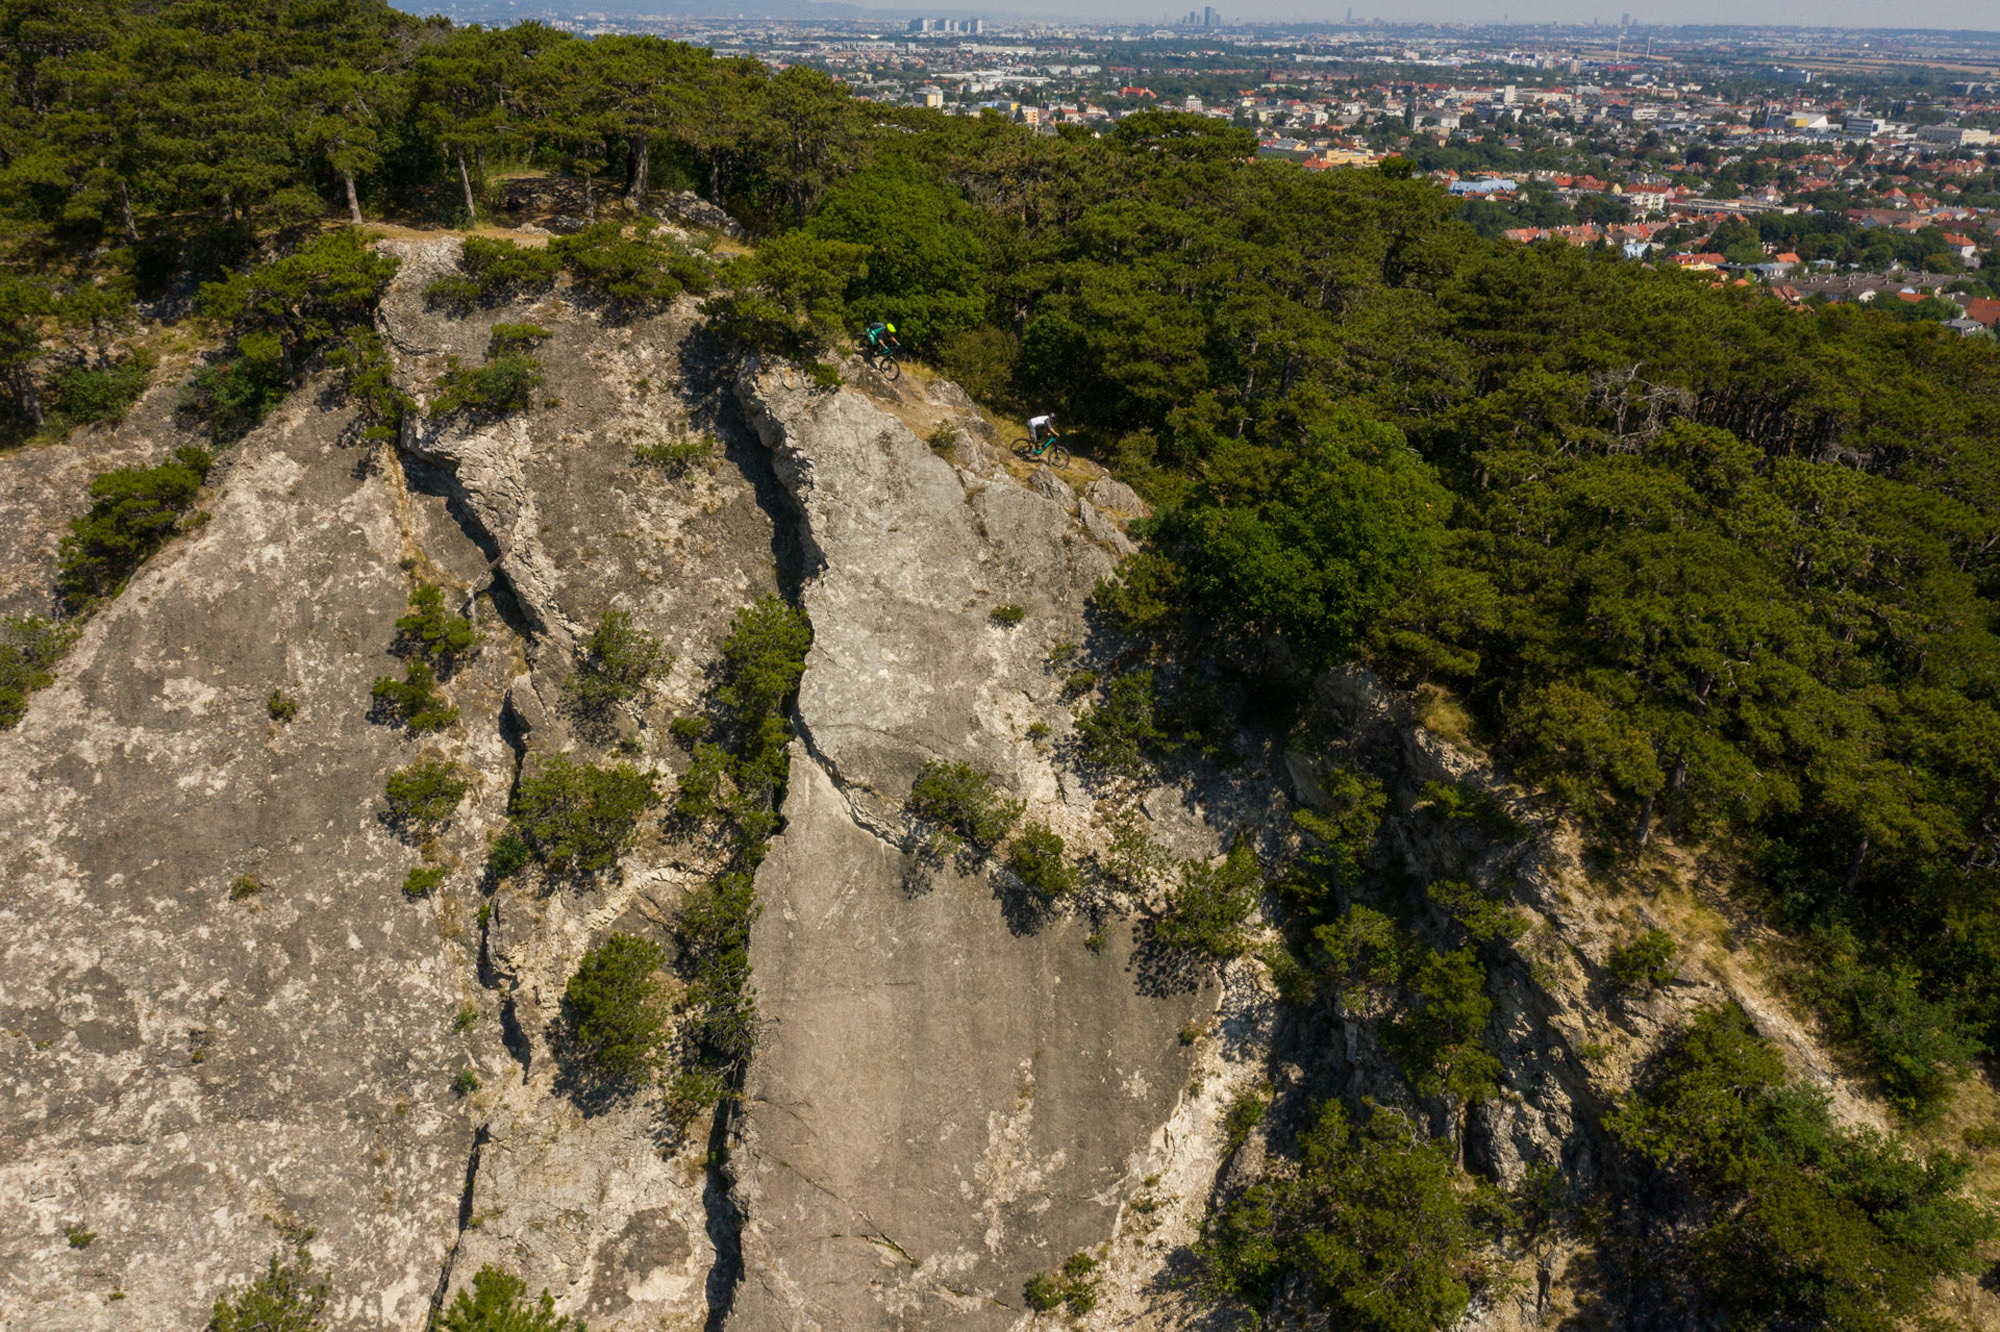 Dominik Raab und Alban Aubert fahren einen schönen Trail entlang einer Felskante und im Hintergrund sieht man die Stadt Wien